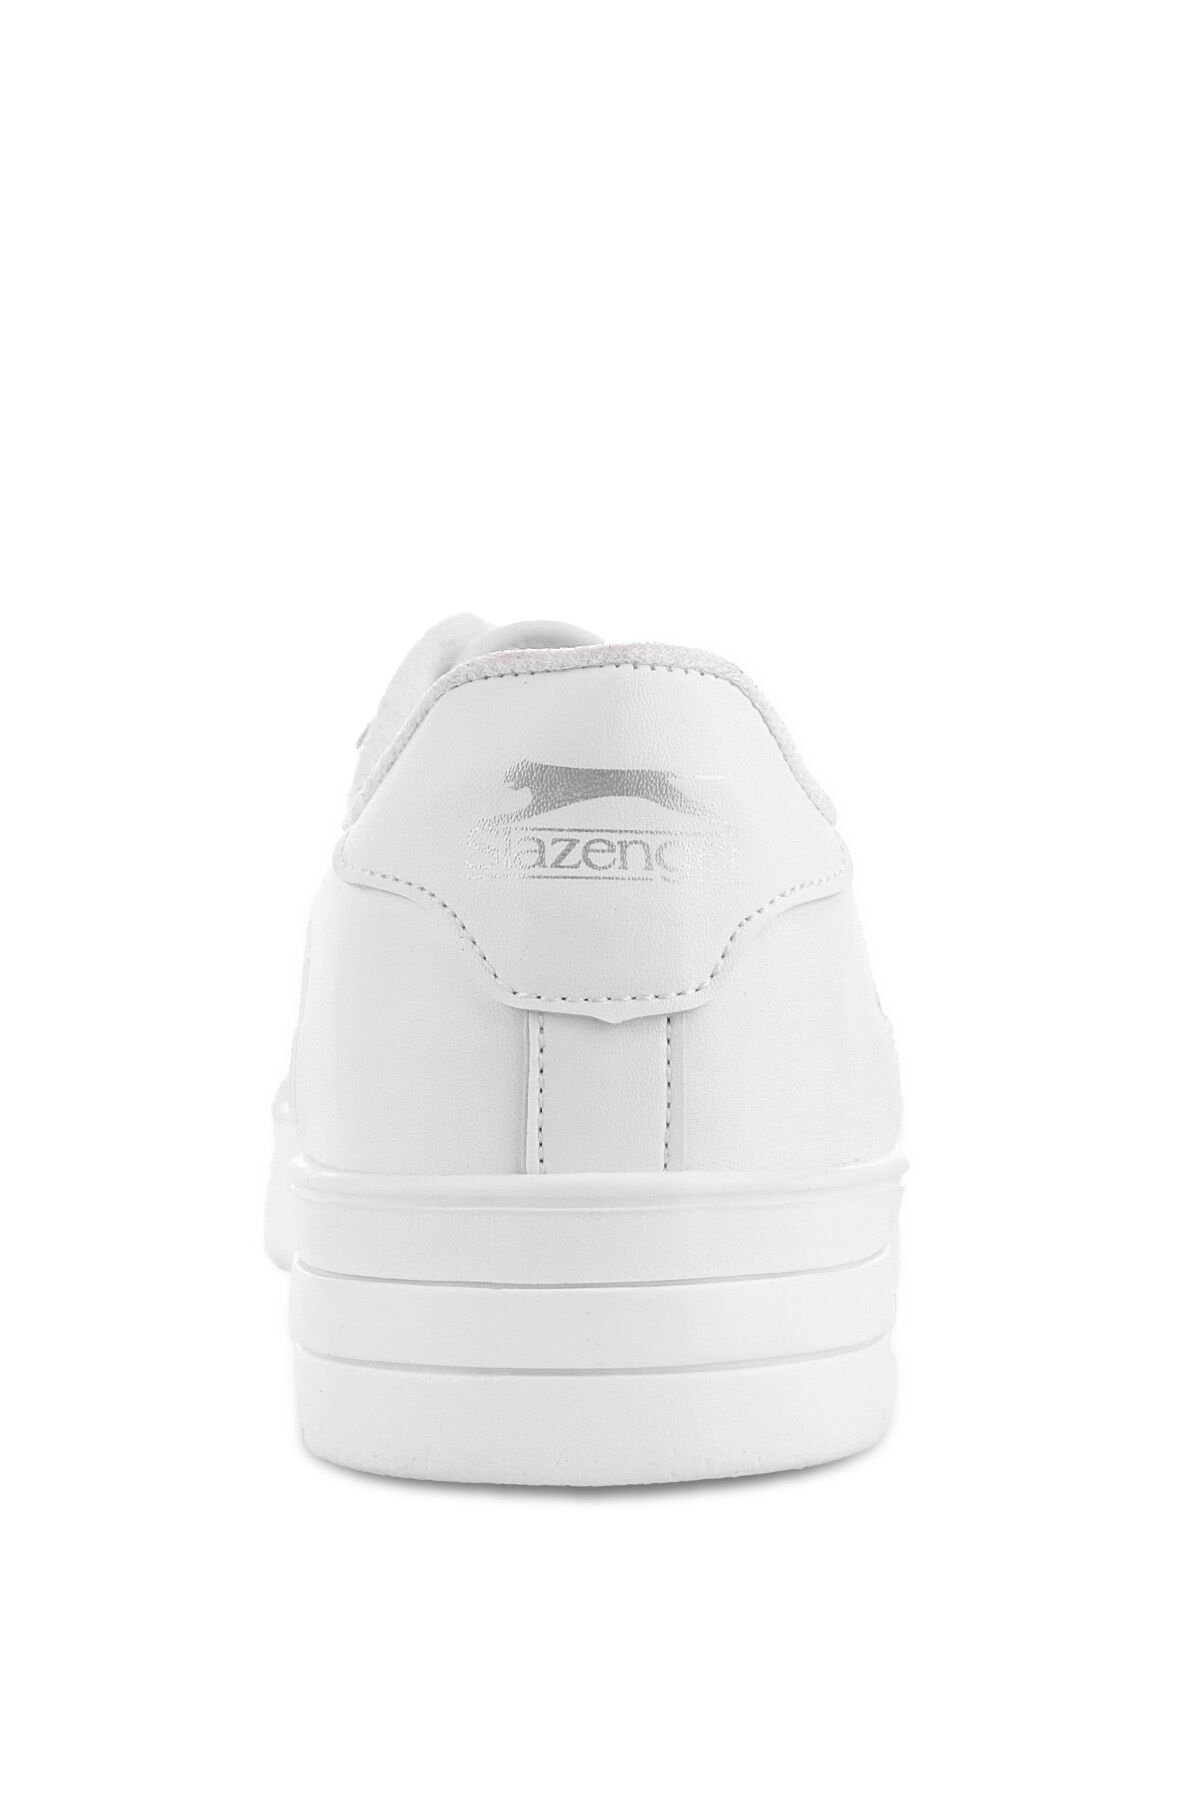 Slazenger CAMP IN Sneaker Kadın Ayakkabı Beyaz - Thumbnail